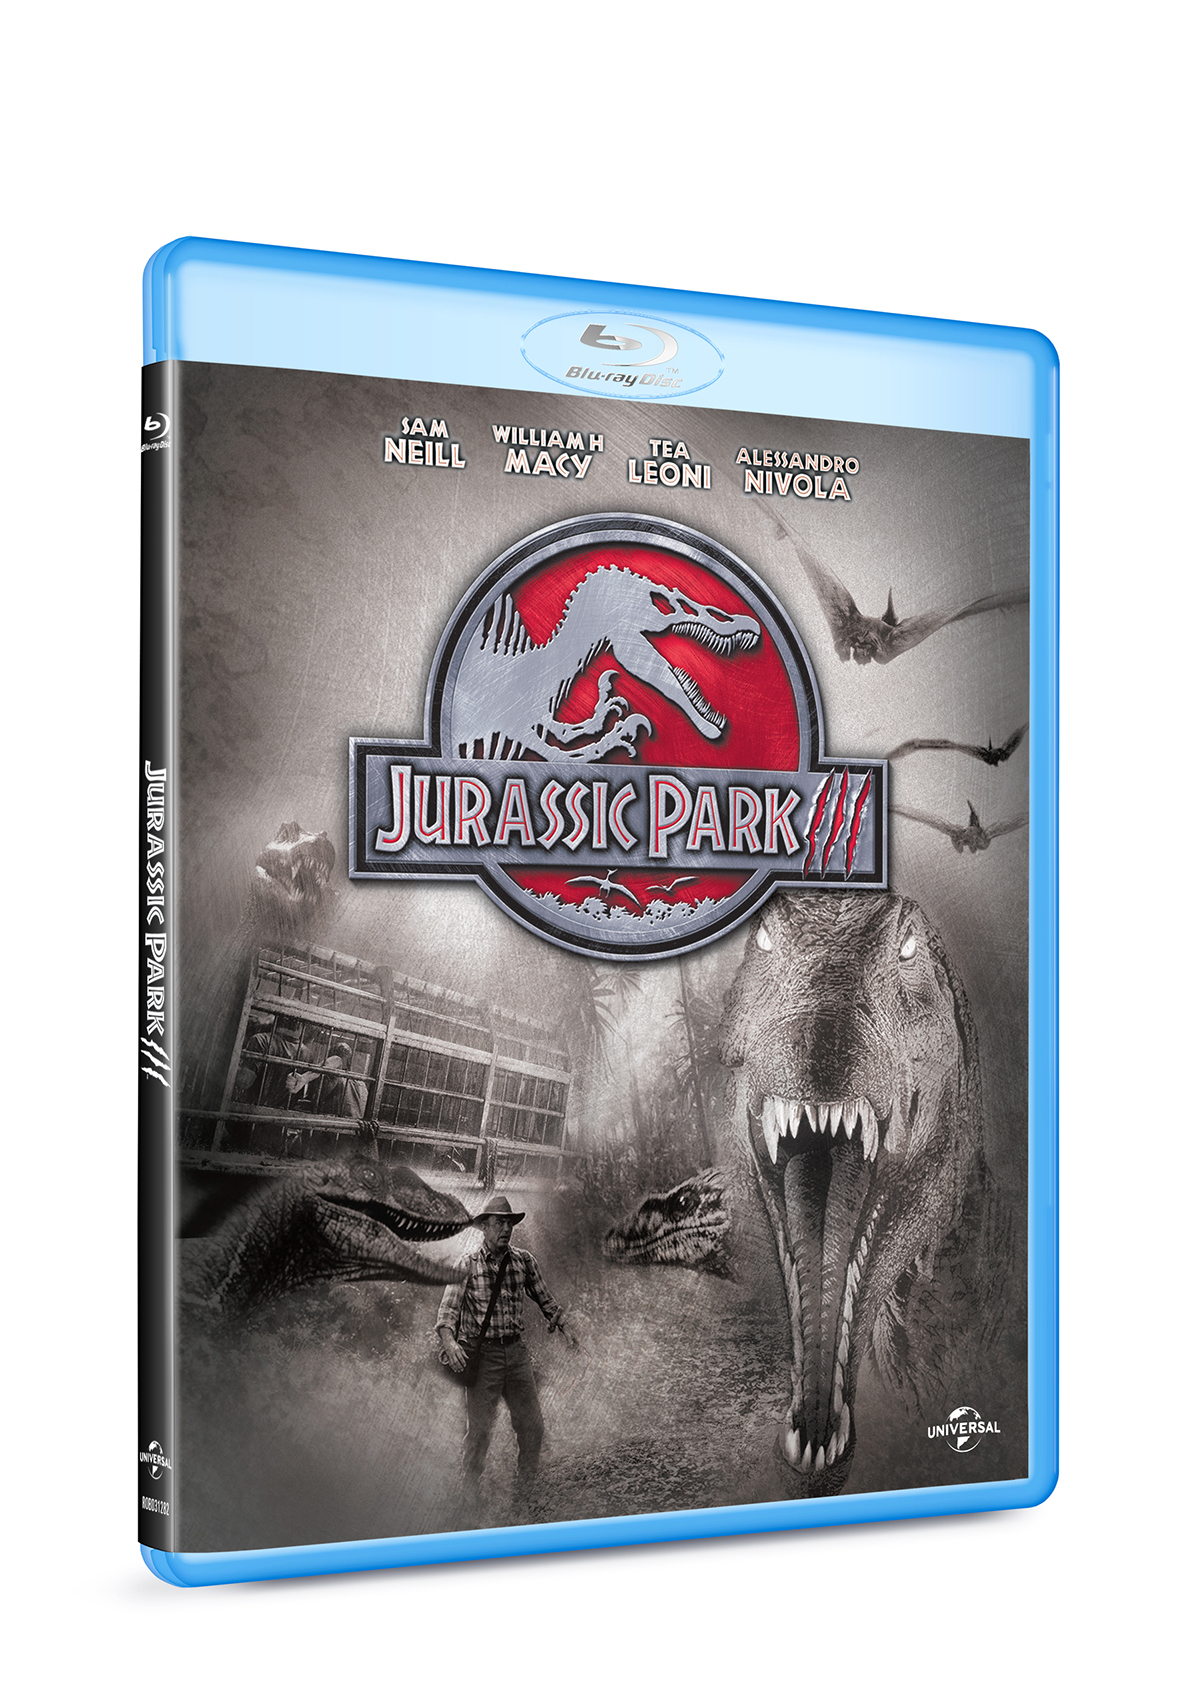 Jurassic Park III (Blu Ray Disc) / Jurassic Park III